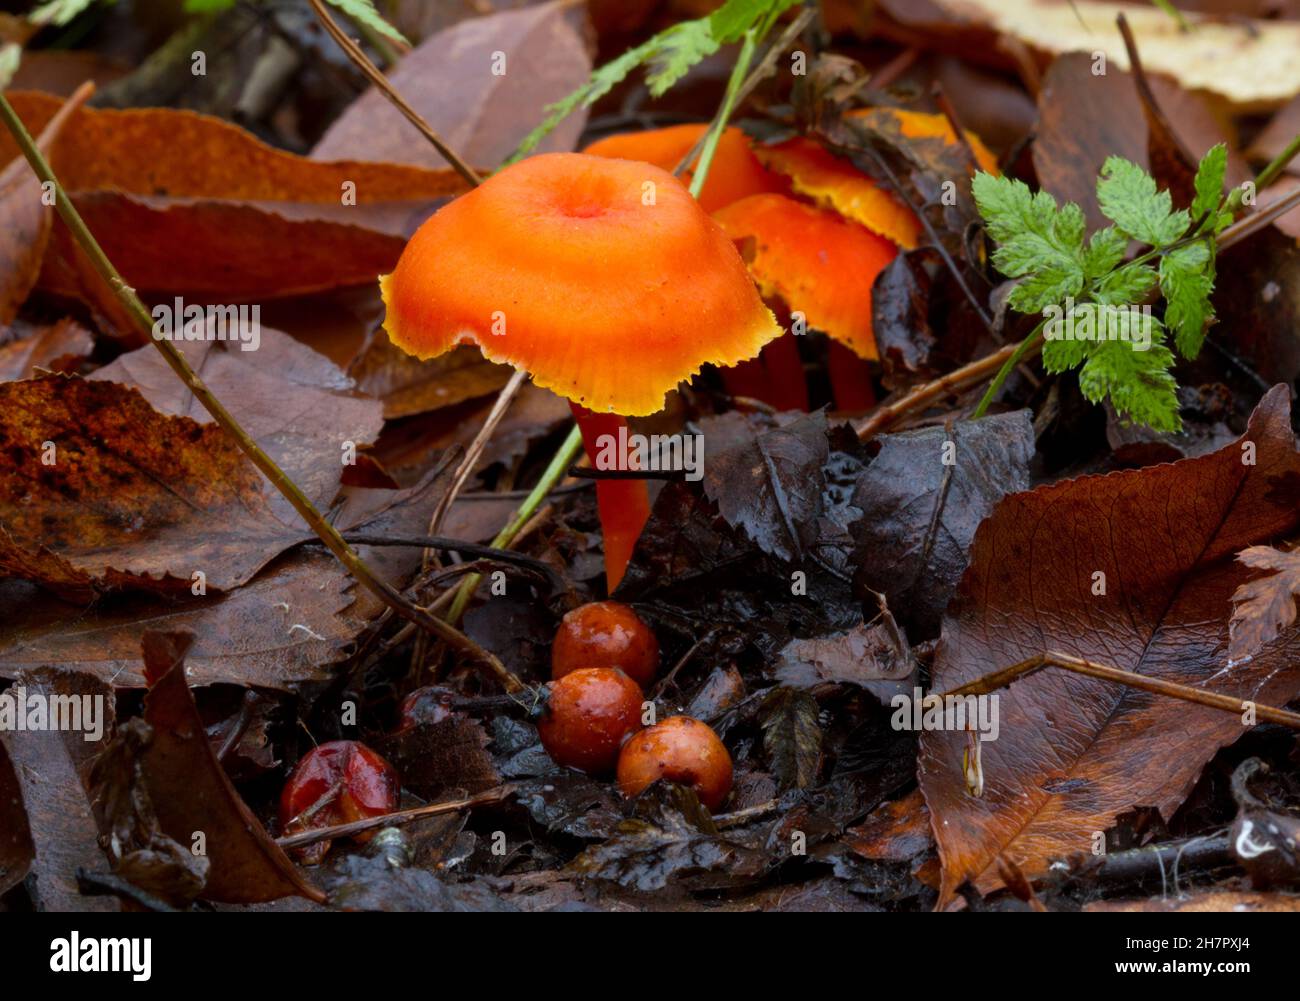 Petit cicap Vermiljon orange-rouge vif entre les feuilles et les fougères tombées, au premier plan quelques sacs d'oeufs, champignons immatures Banque D'Images